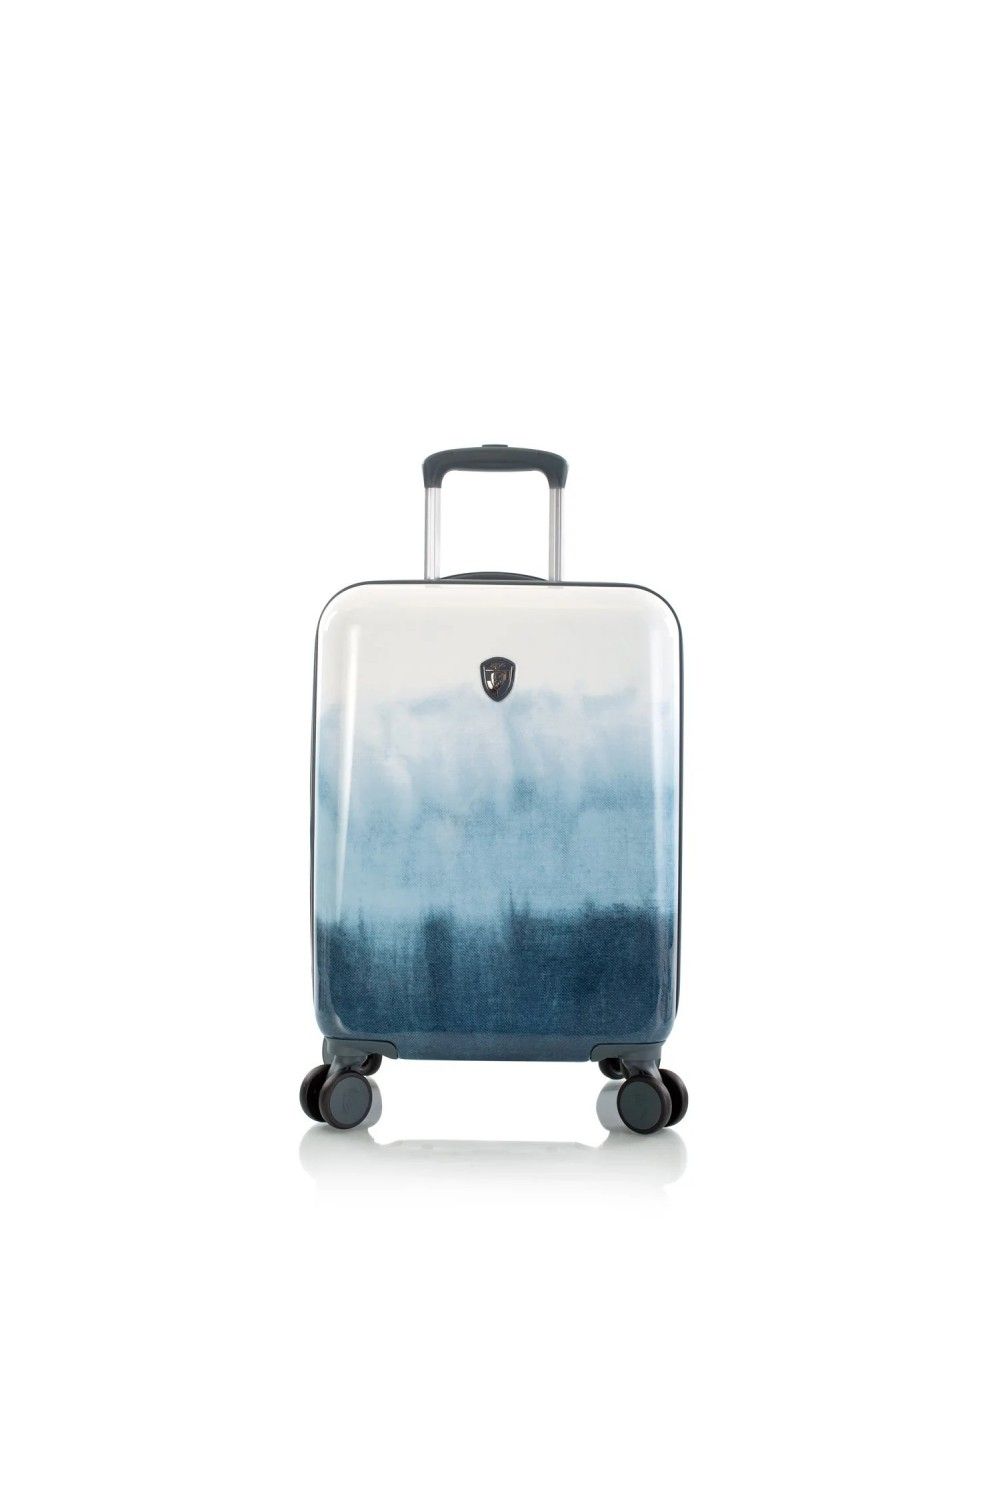 Koffer Handgepäck Heys BLUE Fashion 4 Rad 55cm erweiterbar